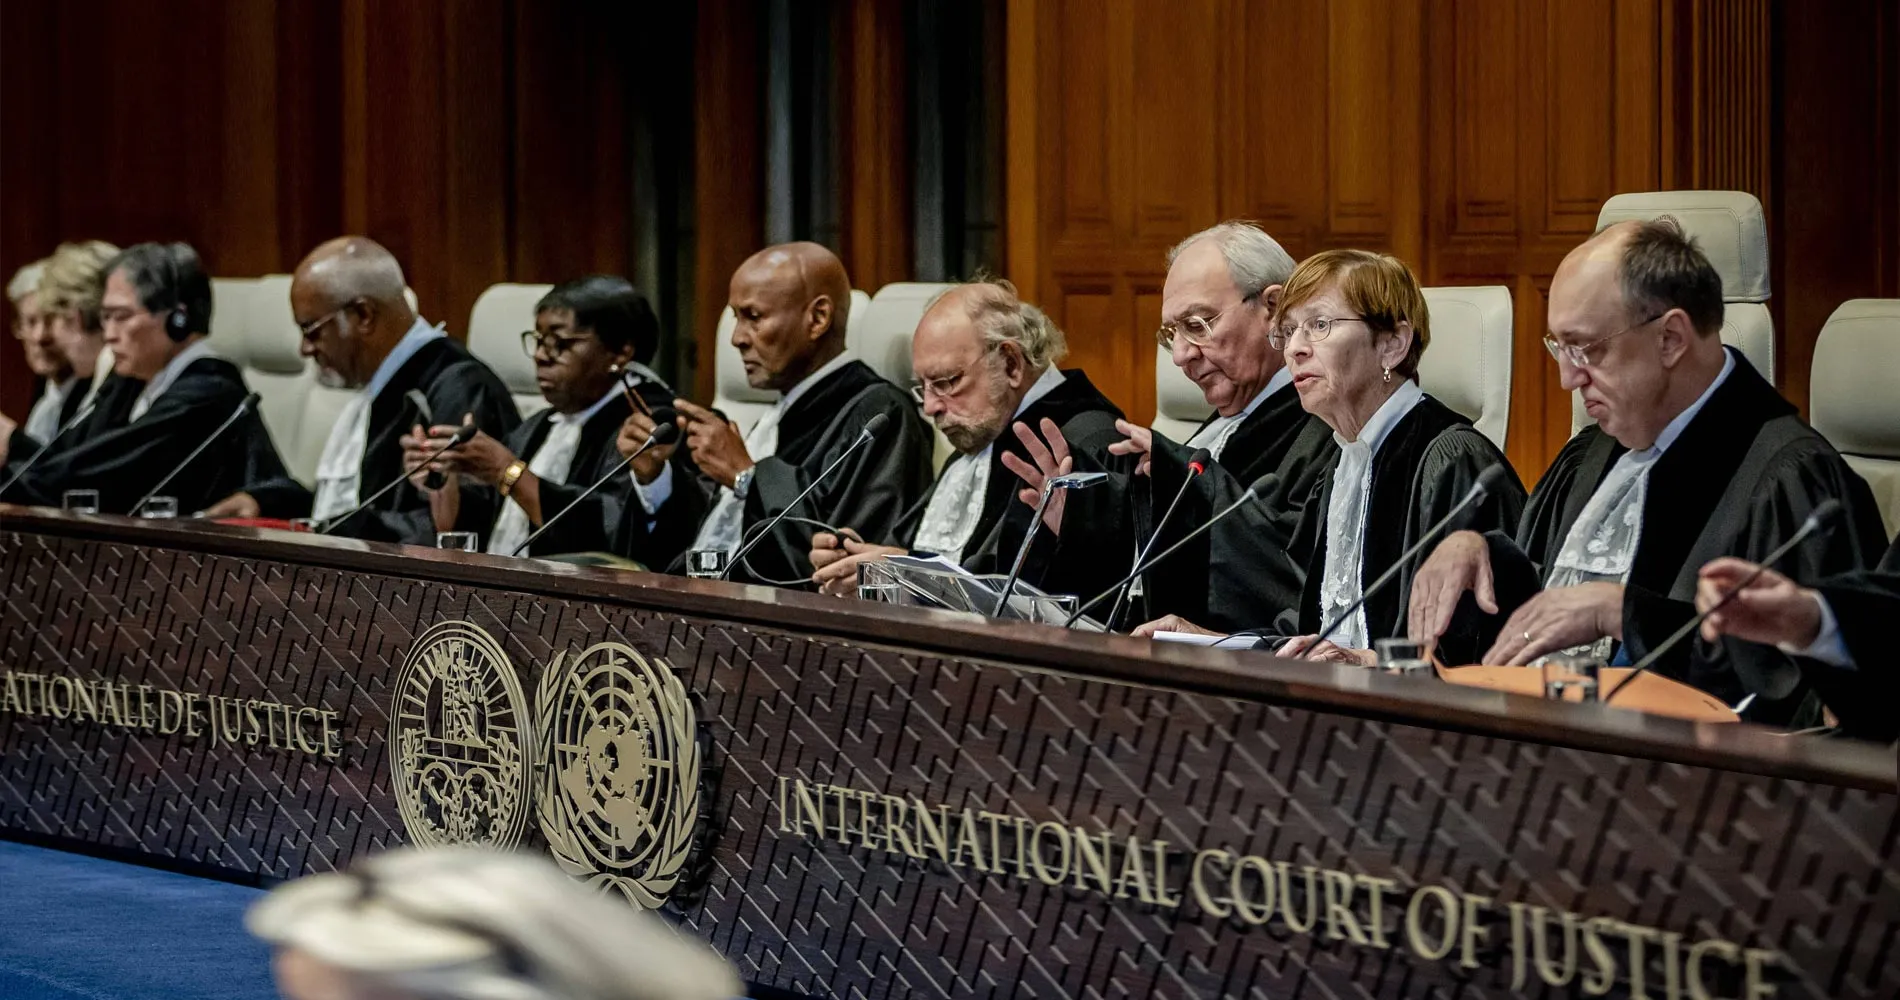 تصويت القاضية الأوغندية في محكمة العدل الدولية المؤيد لإسرائيل: هل هو تطبيق للعدالة بصورة منحازة؟